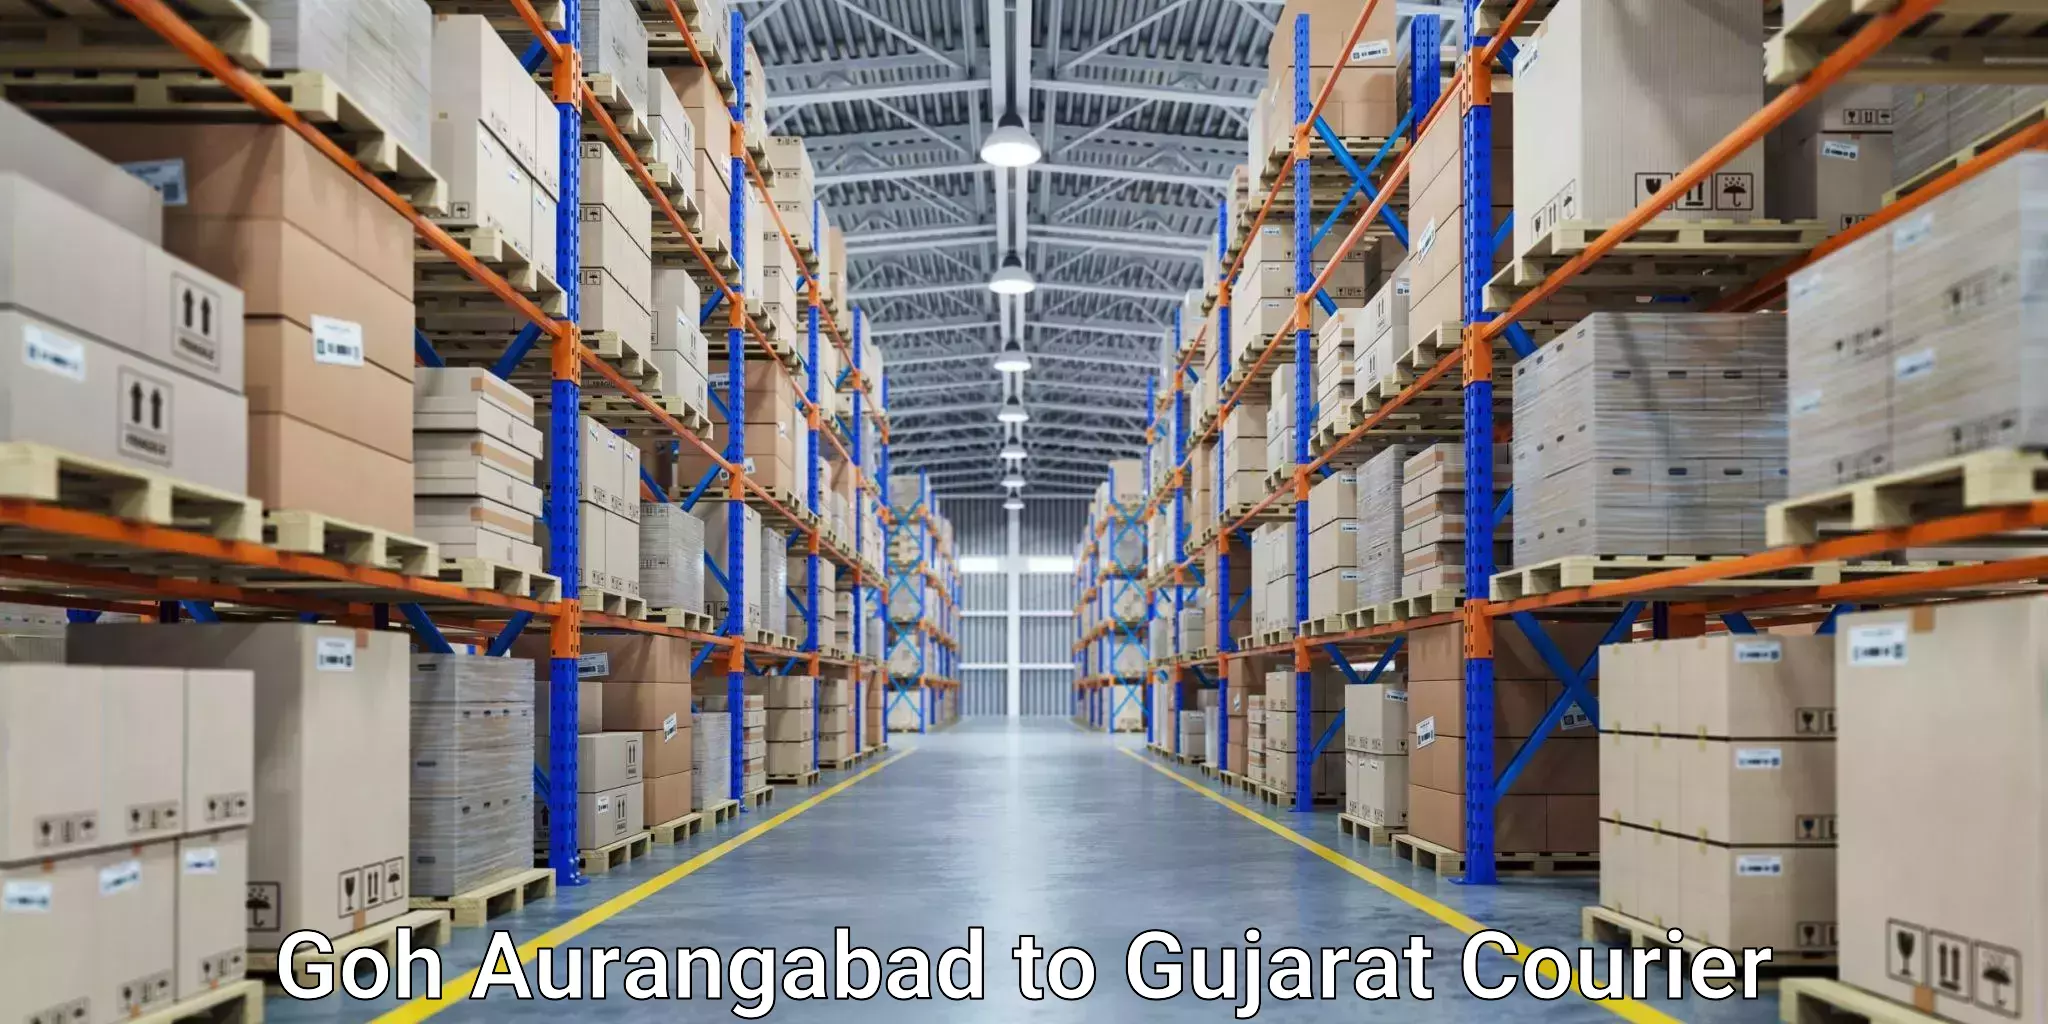 Cargo courier service Goh Aurangabad to Gandhidham